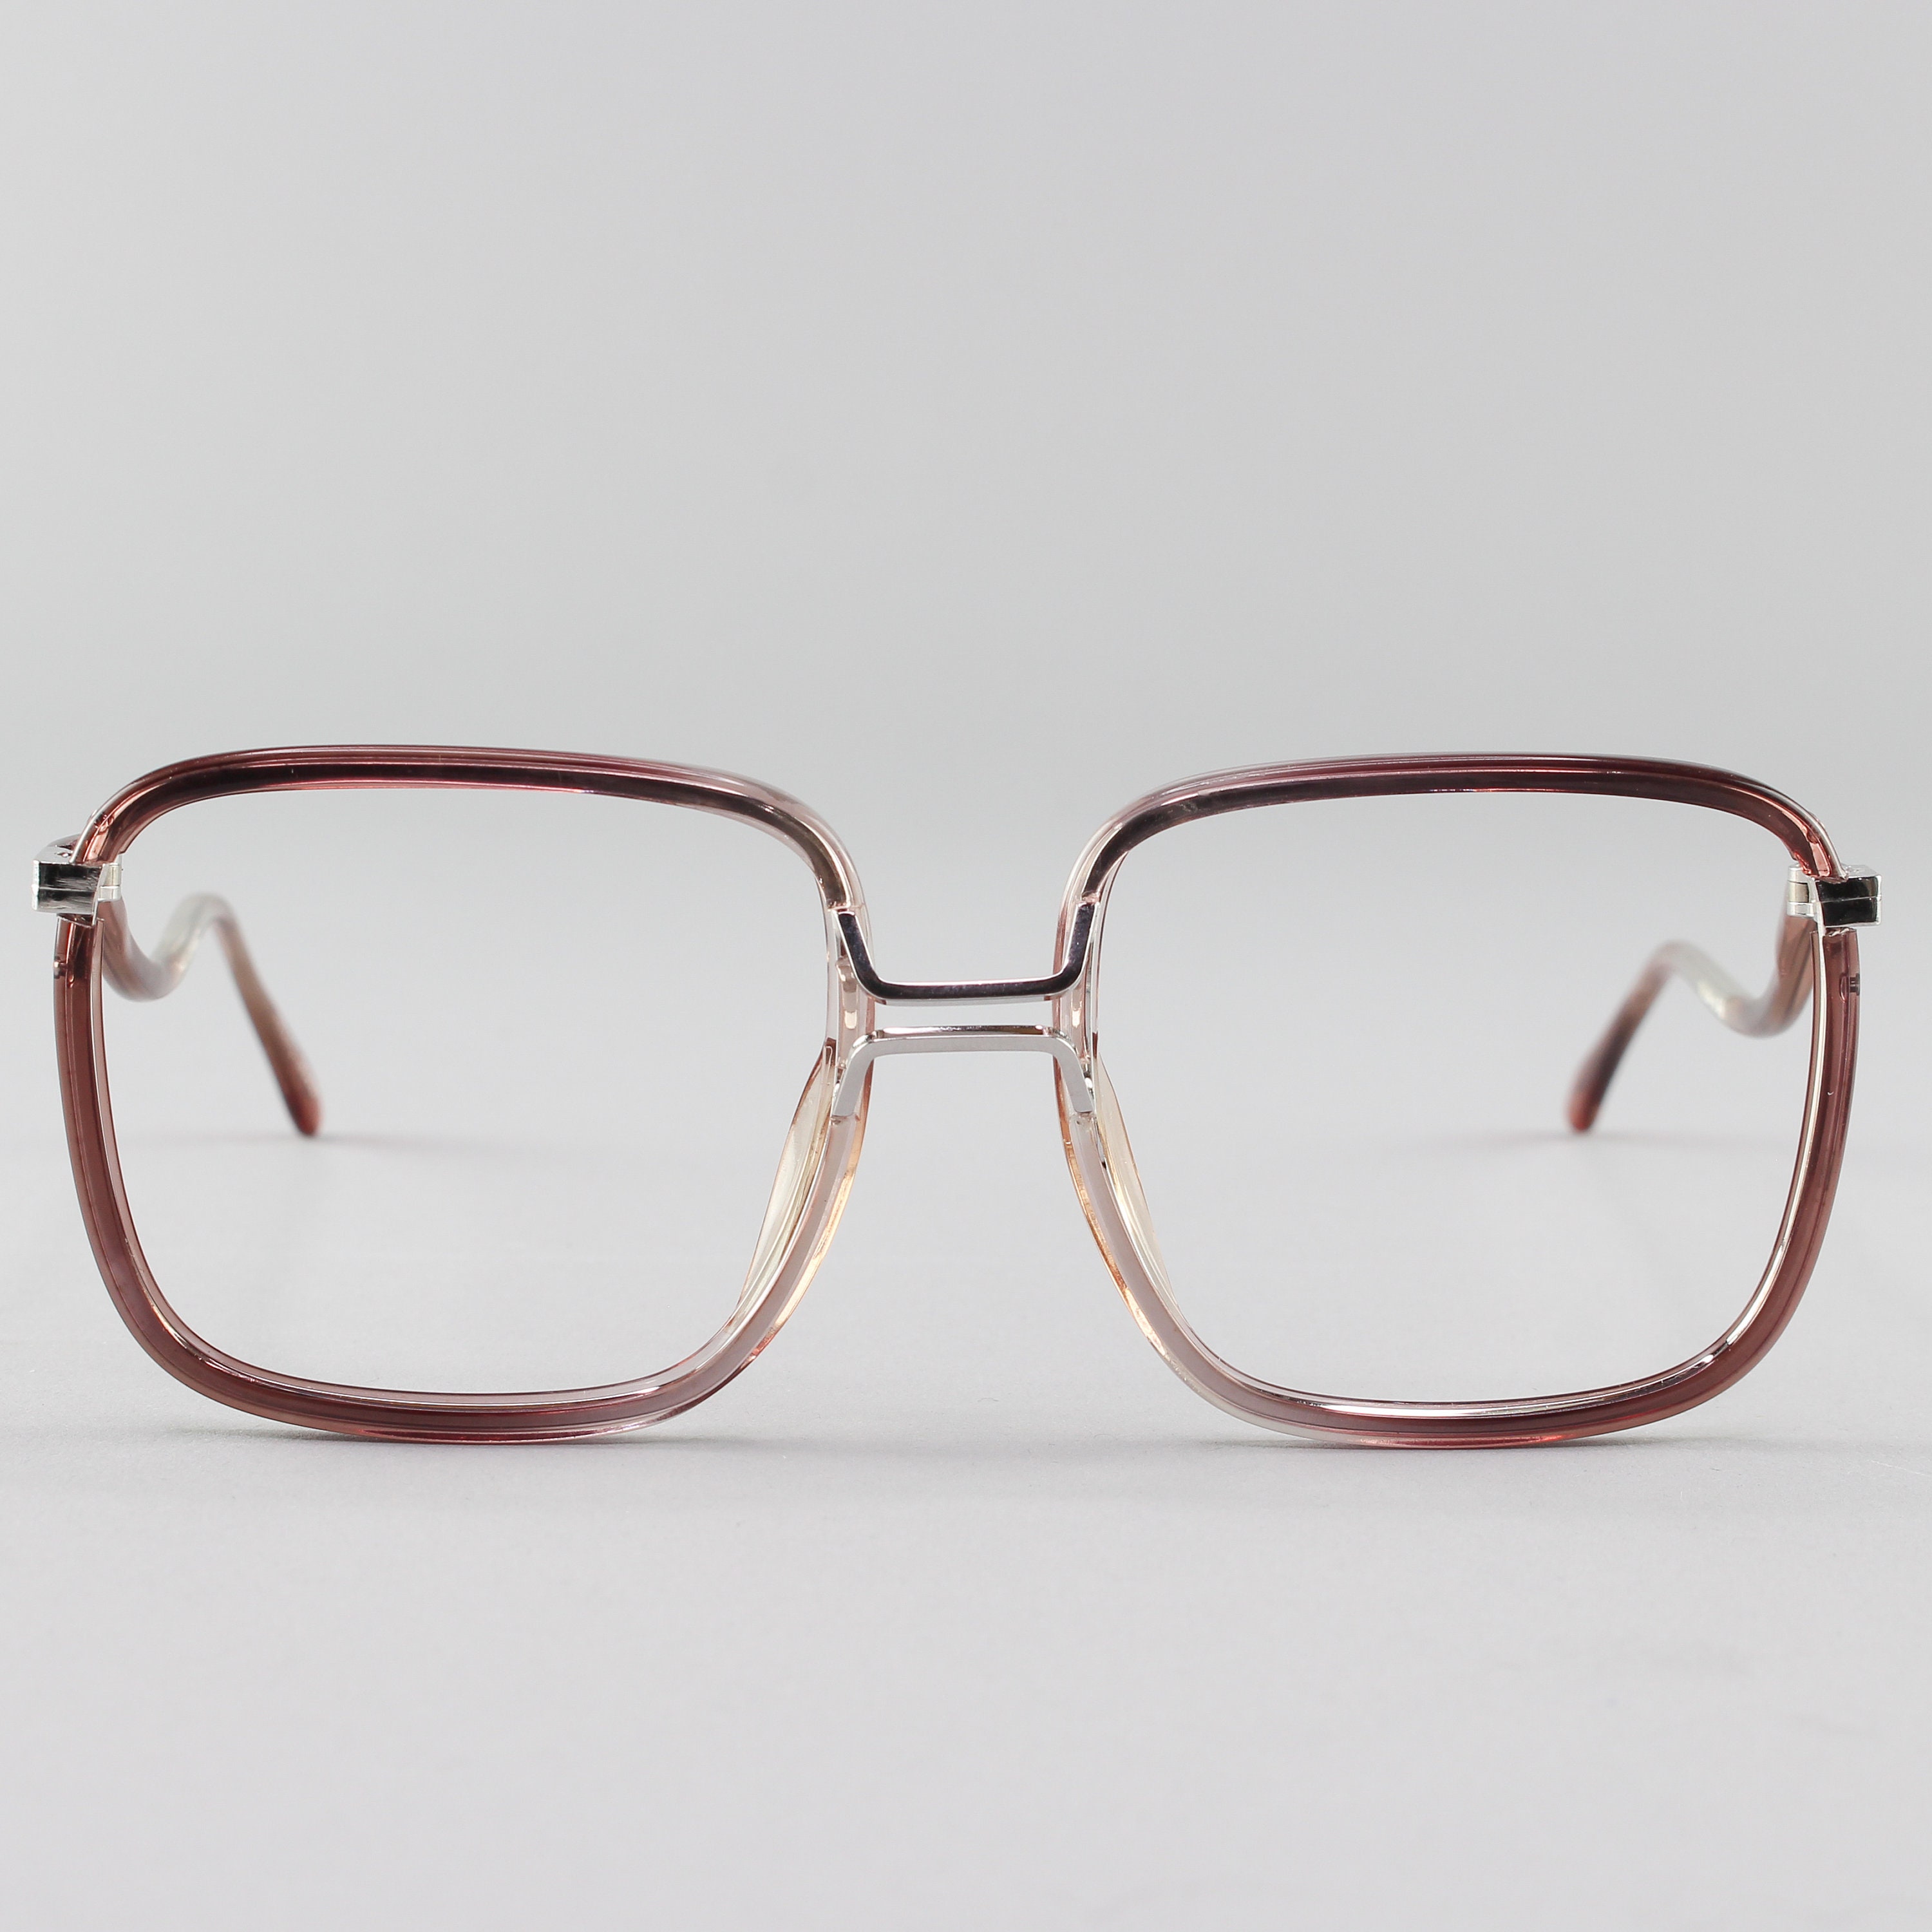 1970s Vintage Eyeglass Frame 70s Glasses Square Gray Eyeglasses